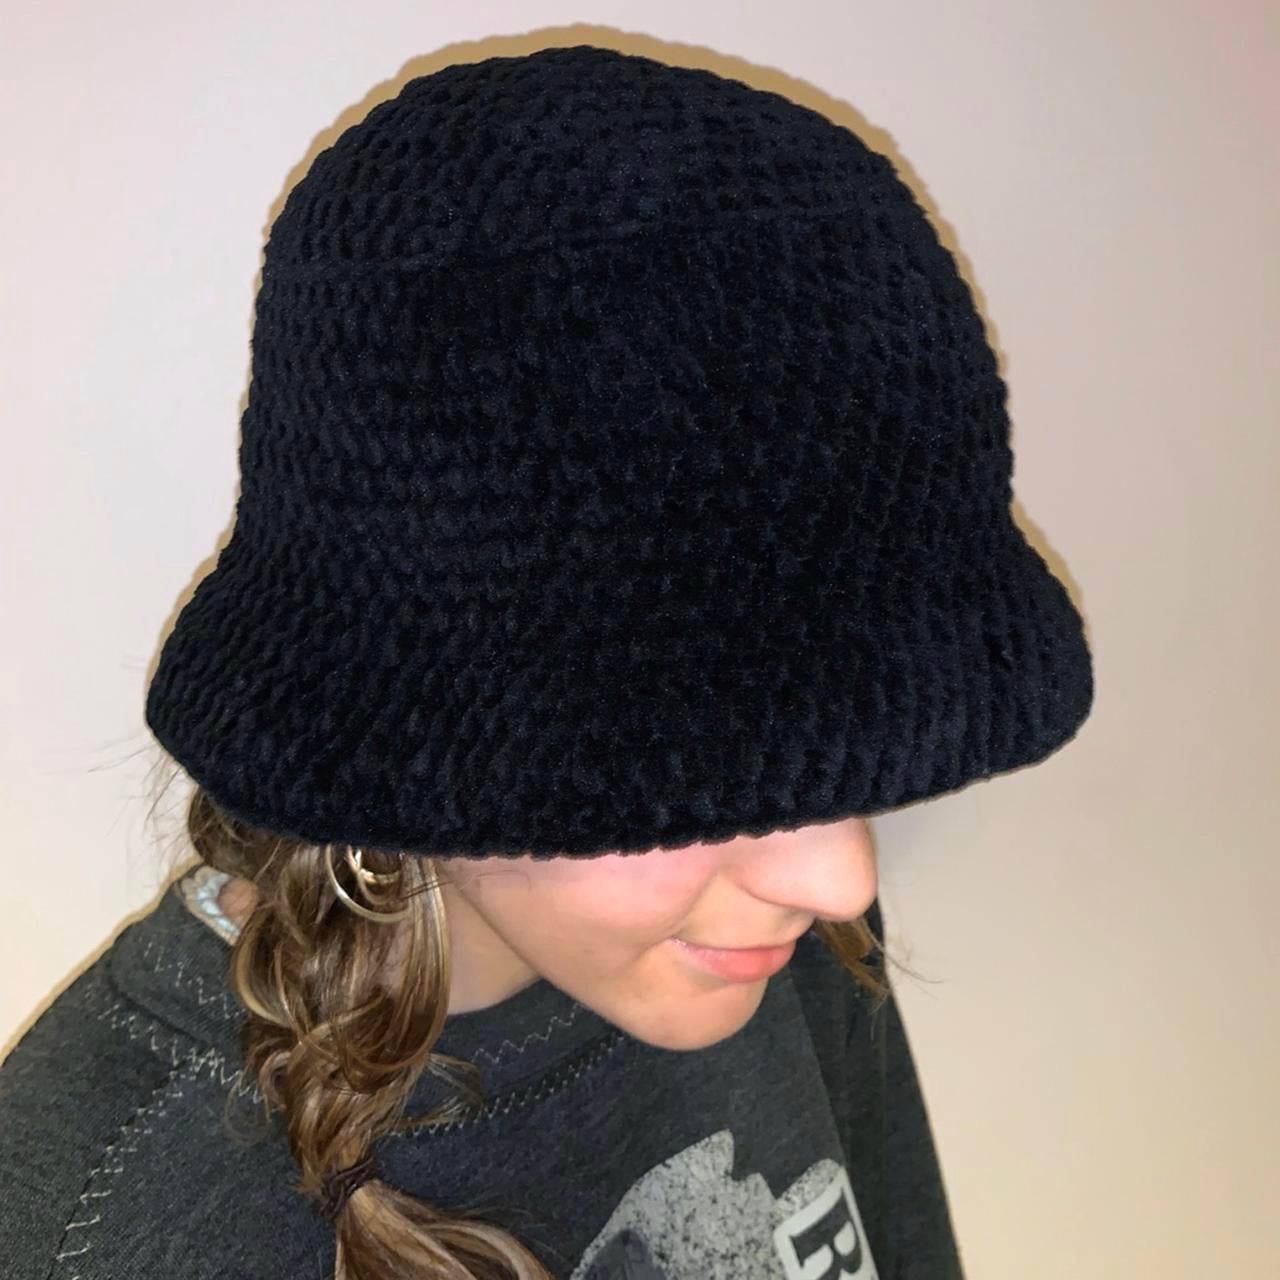 Handmade crushed velvet crochet bucket hat in black